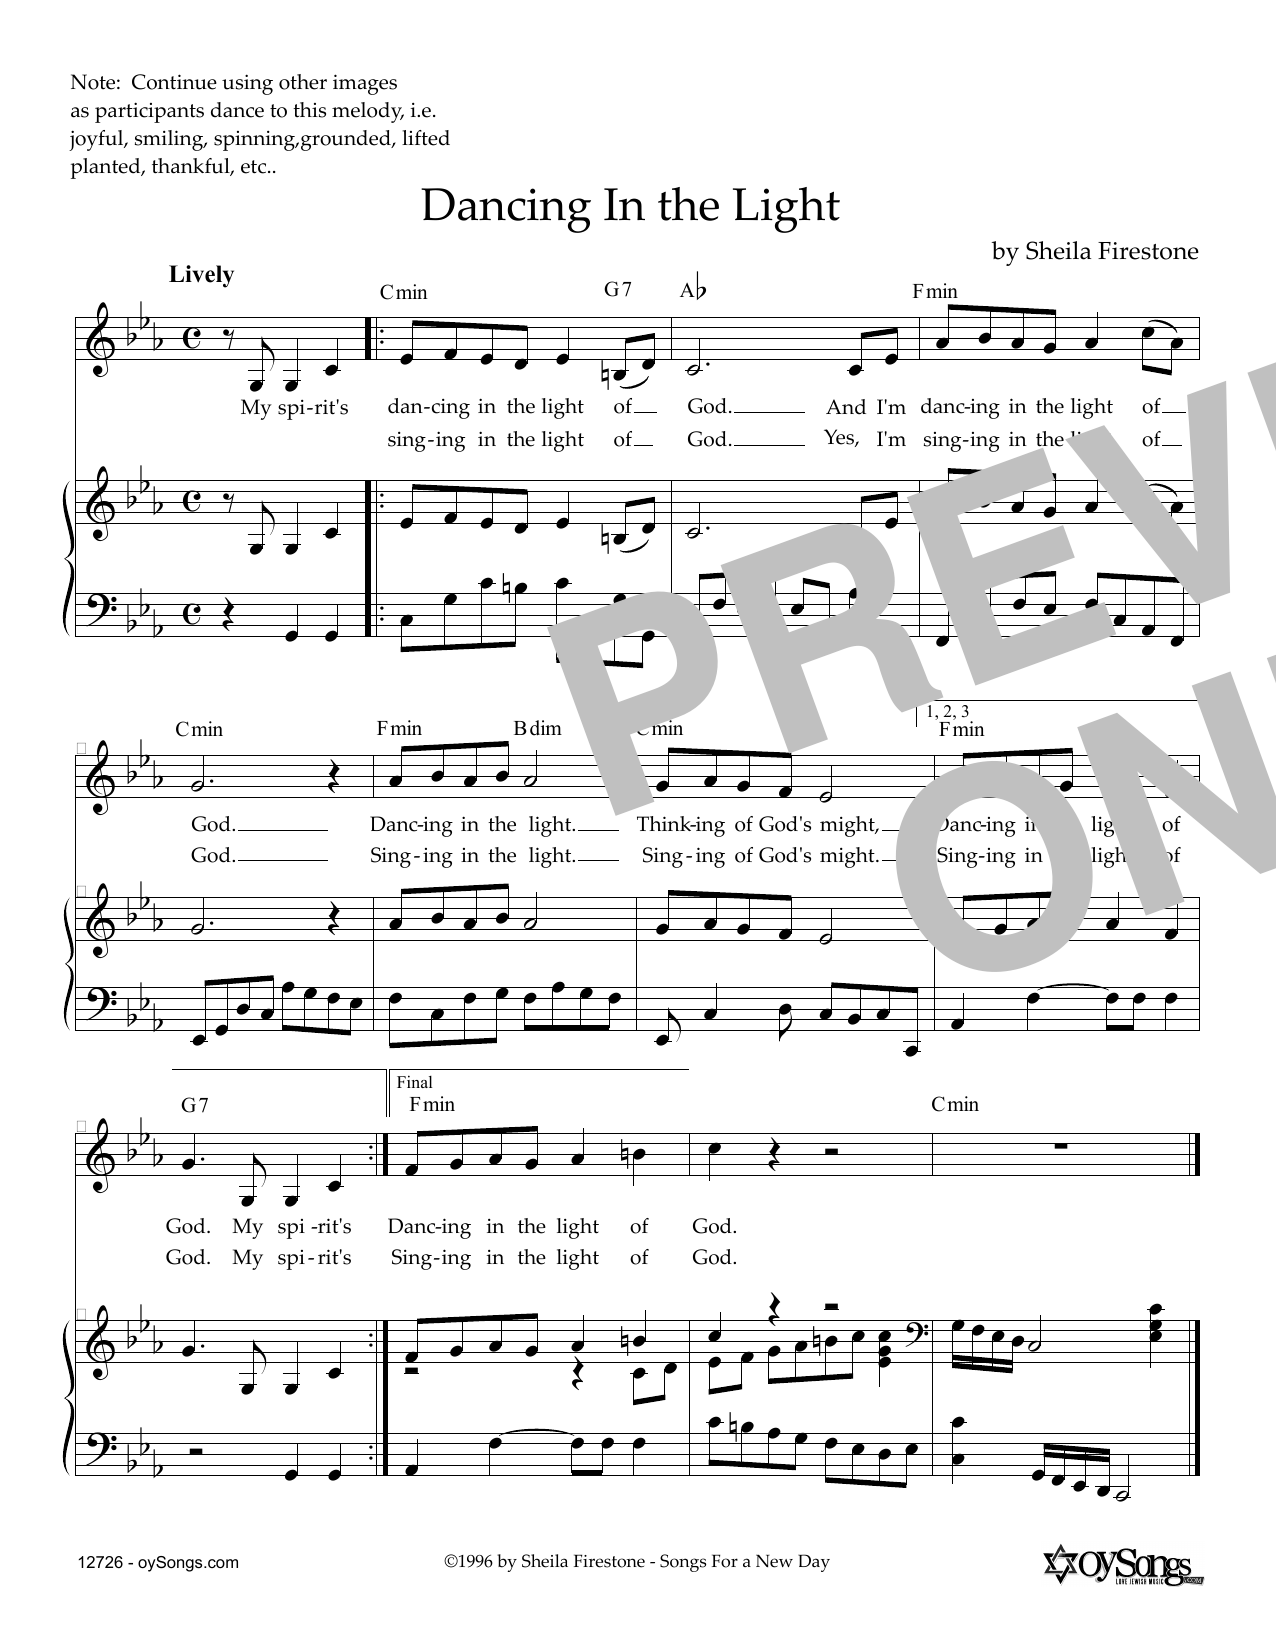 Download Sheila Firestone Dancing In The Light Sheet Music